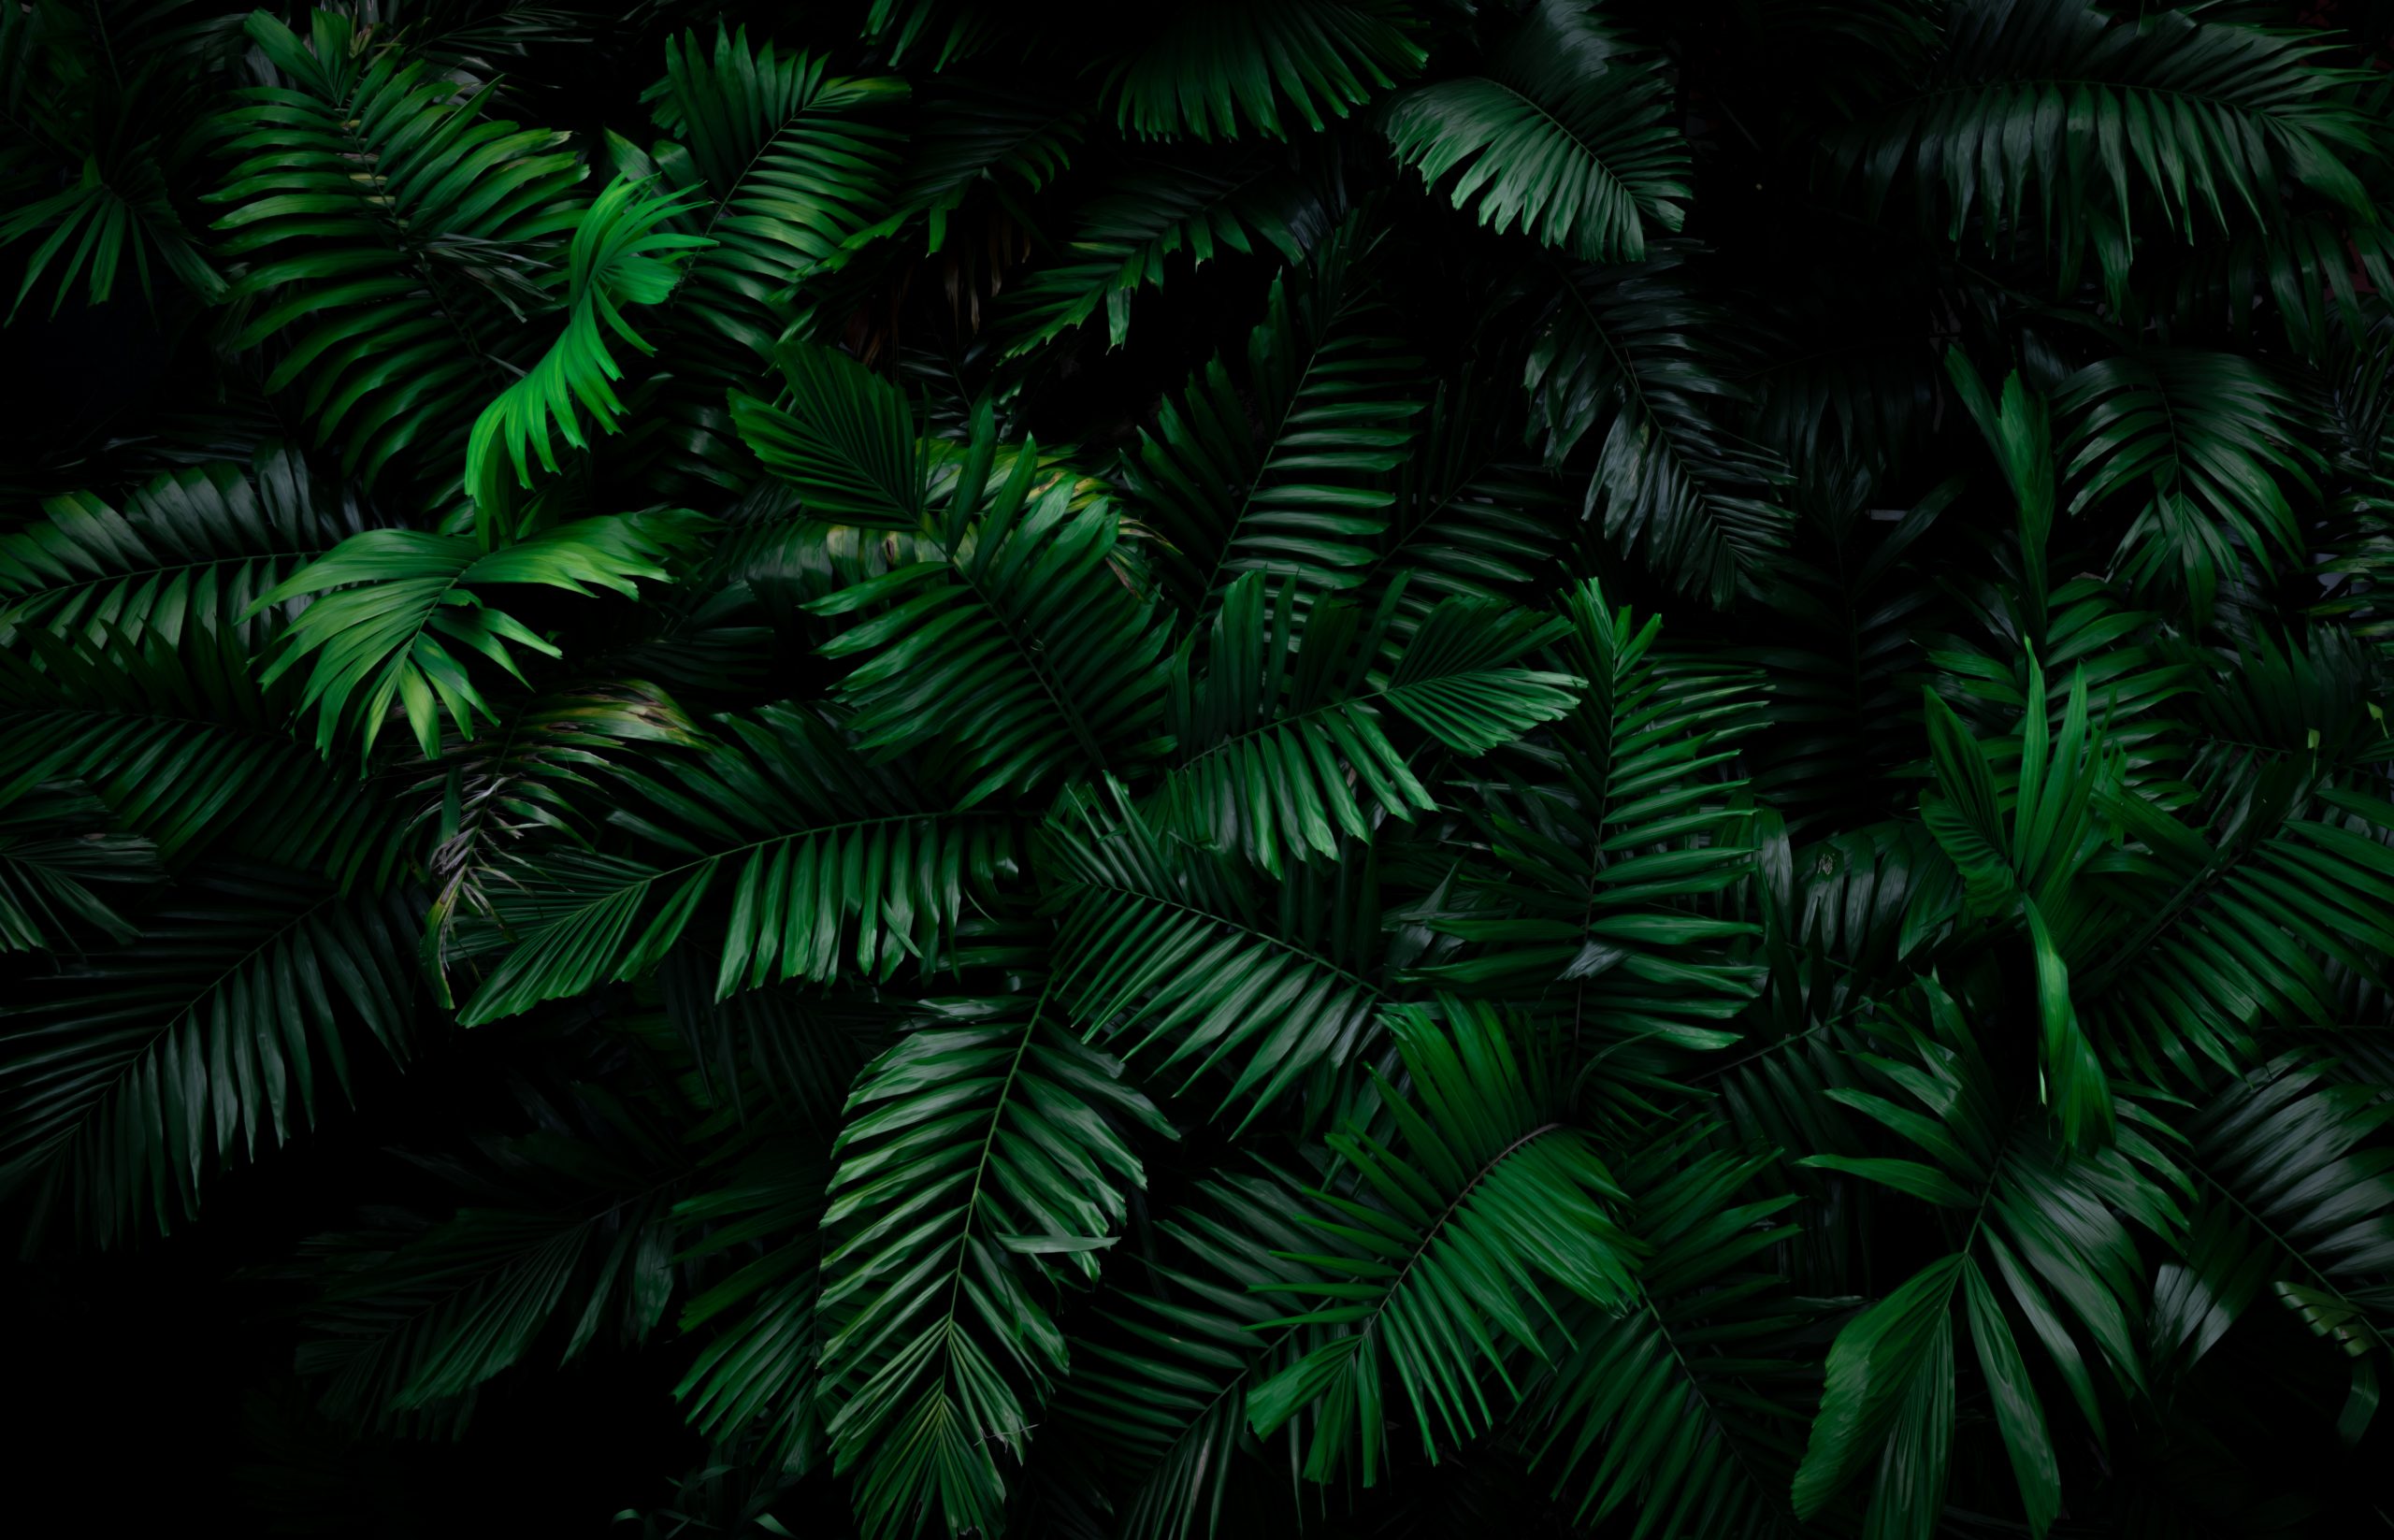 Fern leaves on dark background in jungle. Dense dark green fern